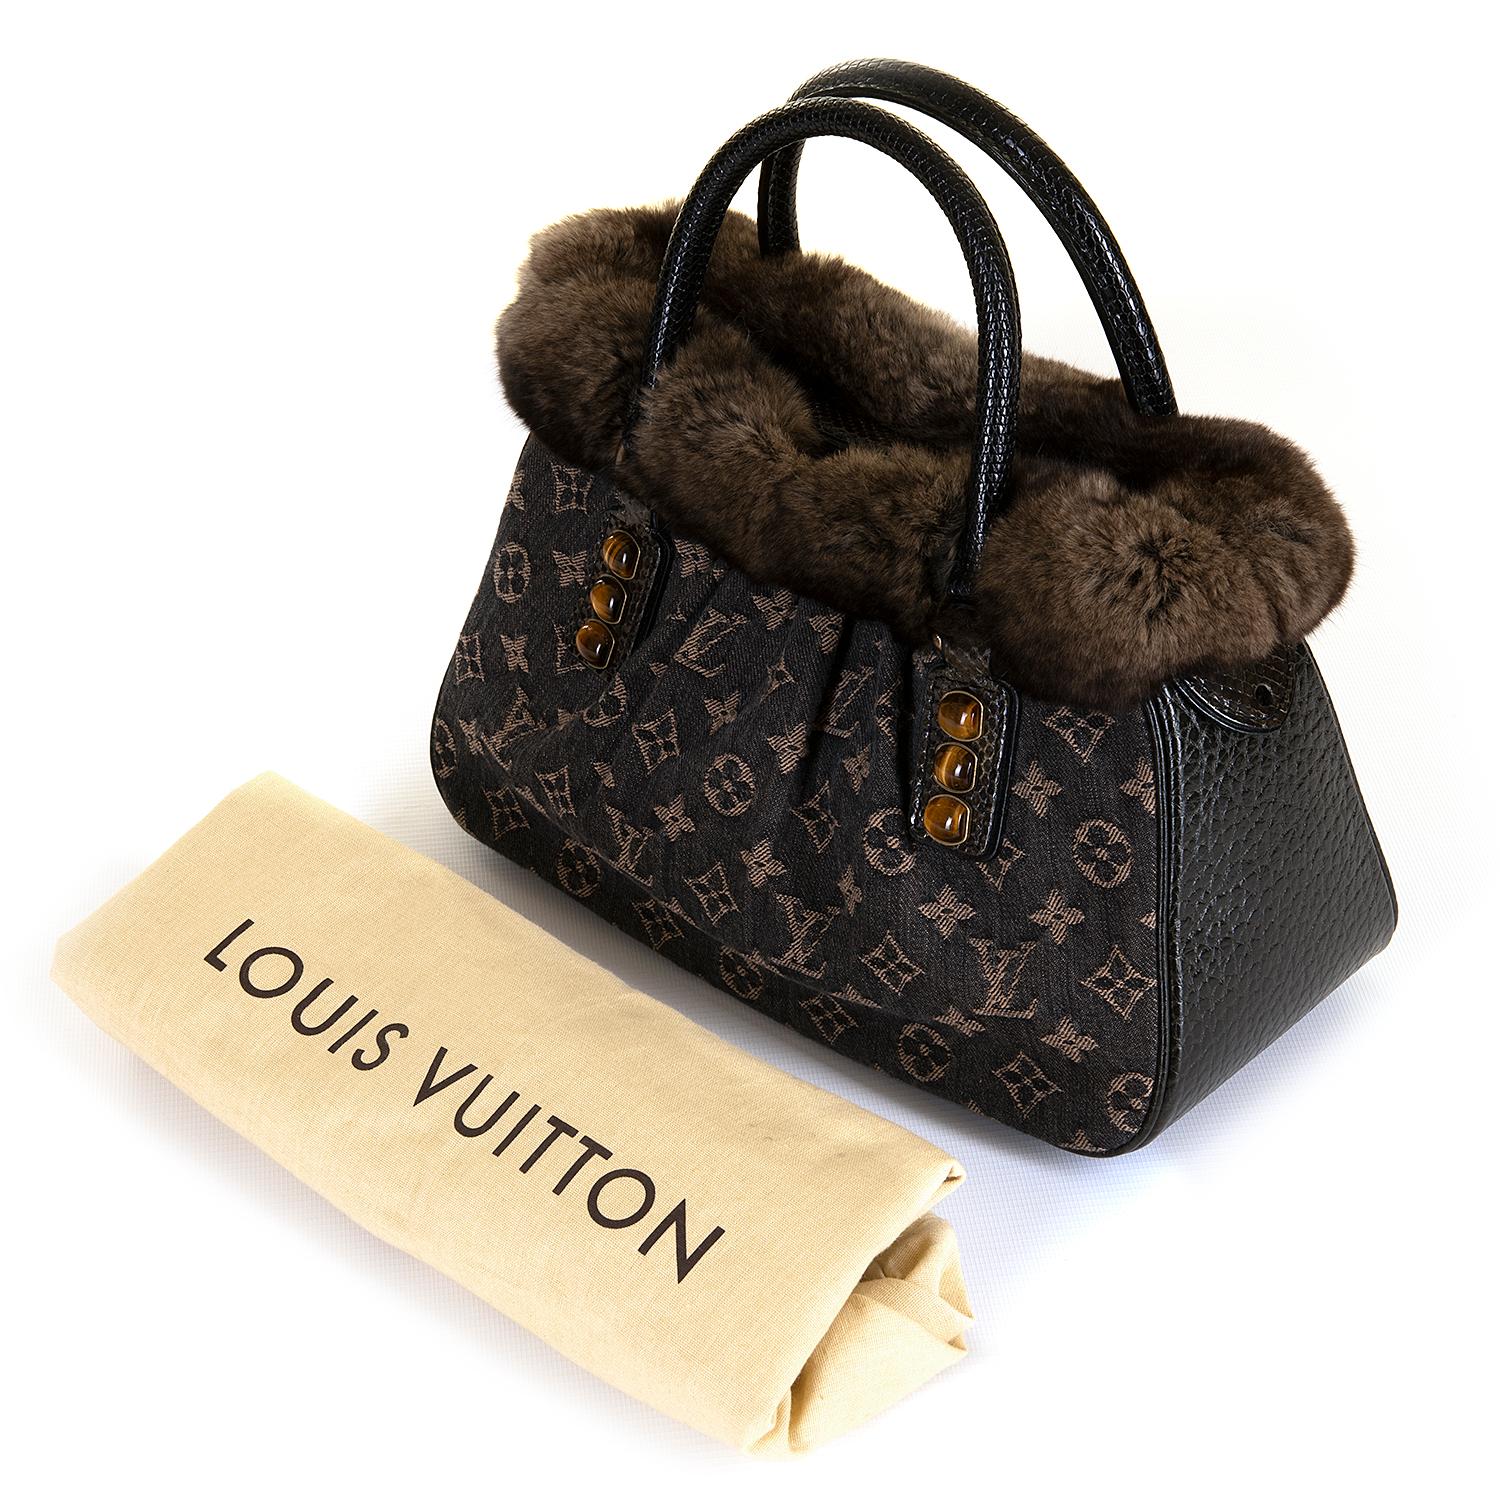 As New Louis Vuitton 'Runway' Monogrammed Lizard, Python & Fur Bag (Schwarz)